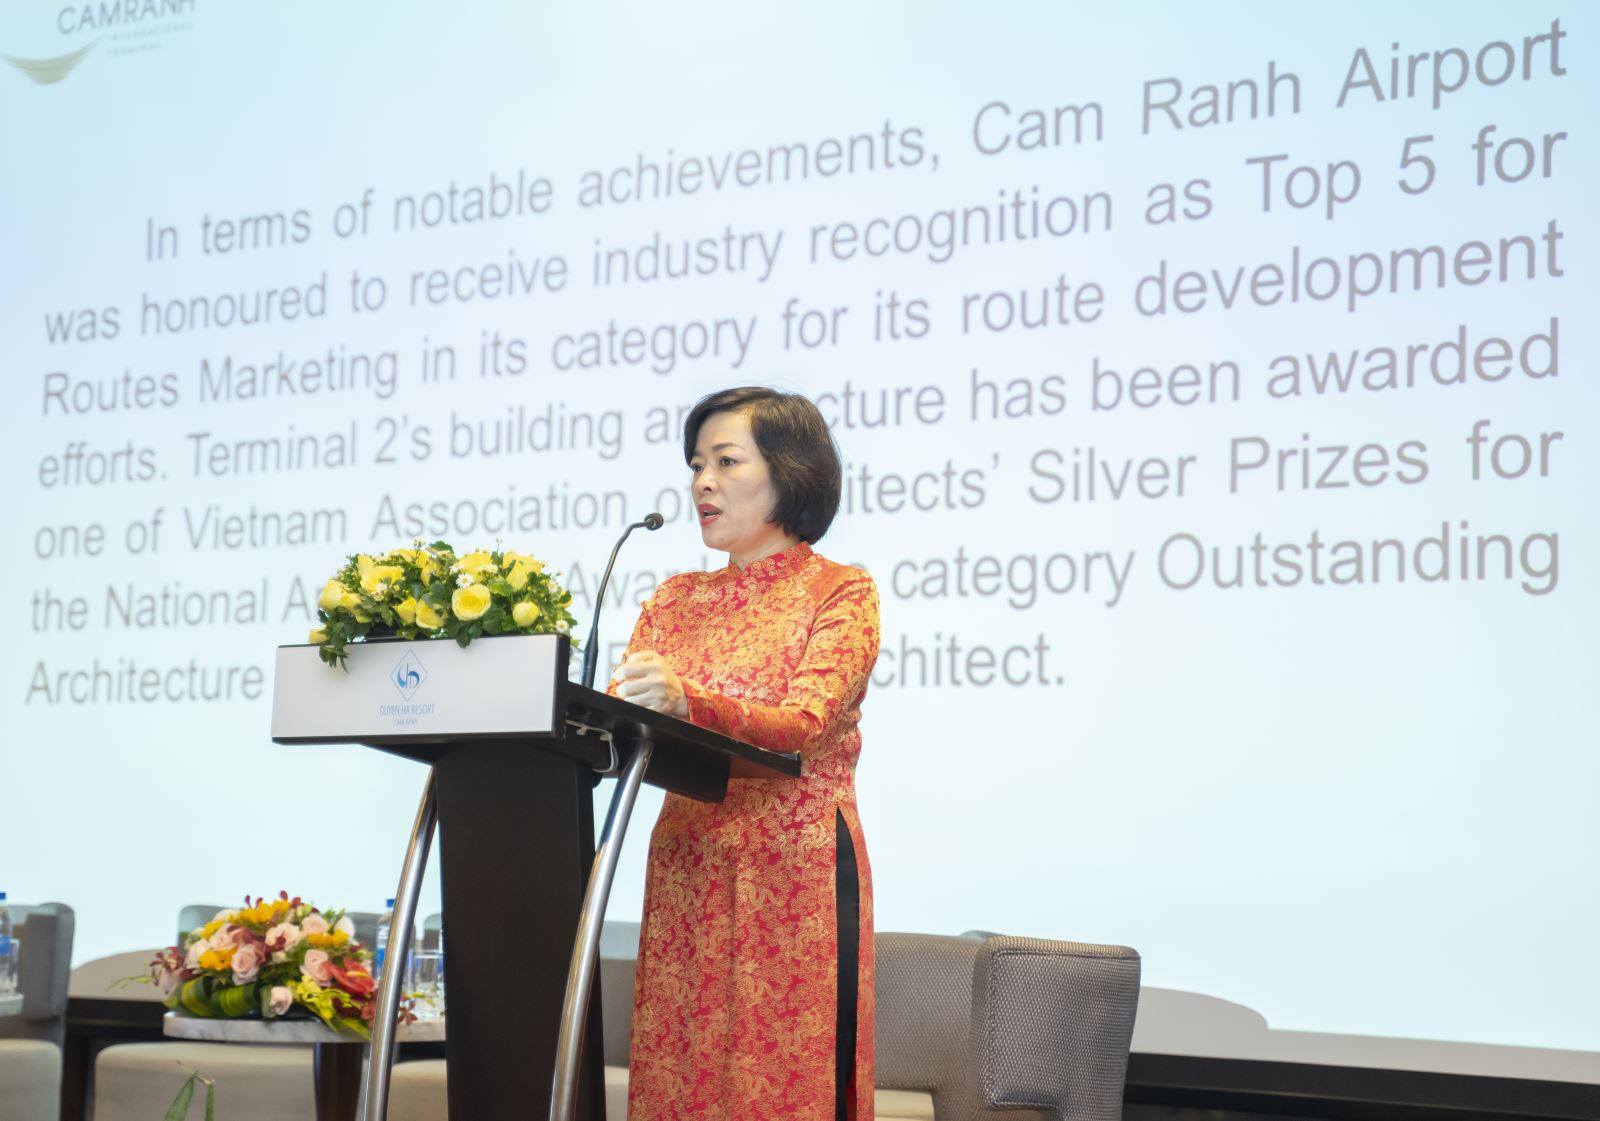 Hình ảnh tư liệu: Bà Lê Thị Hồng Minh - Tổng Giám đốc Công ty Cổ phần Nhà ga Quốc tế Cam Ranh tại buổi hội thảo “Chiến lược nâng cao chất lượng dịch vụ” tháng 6/2019